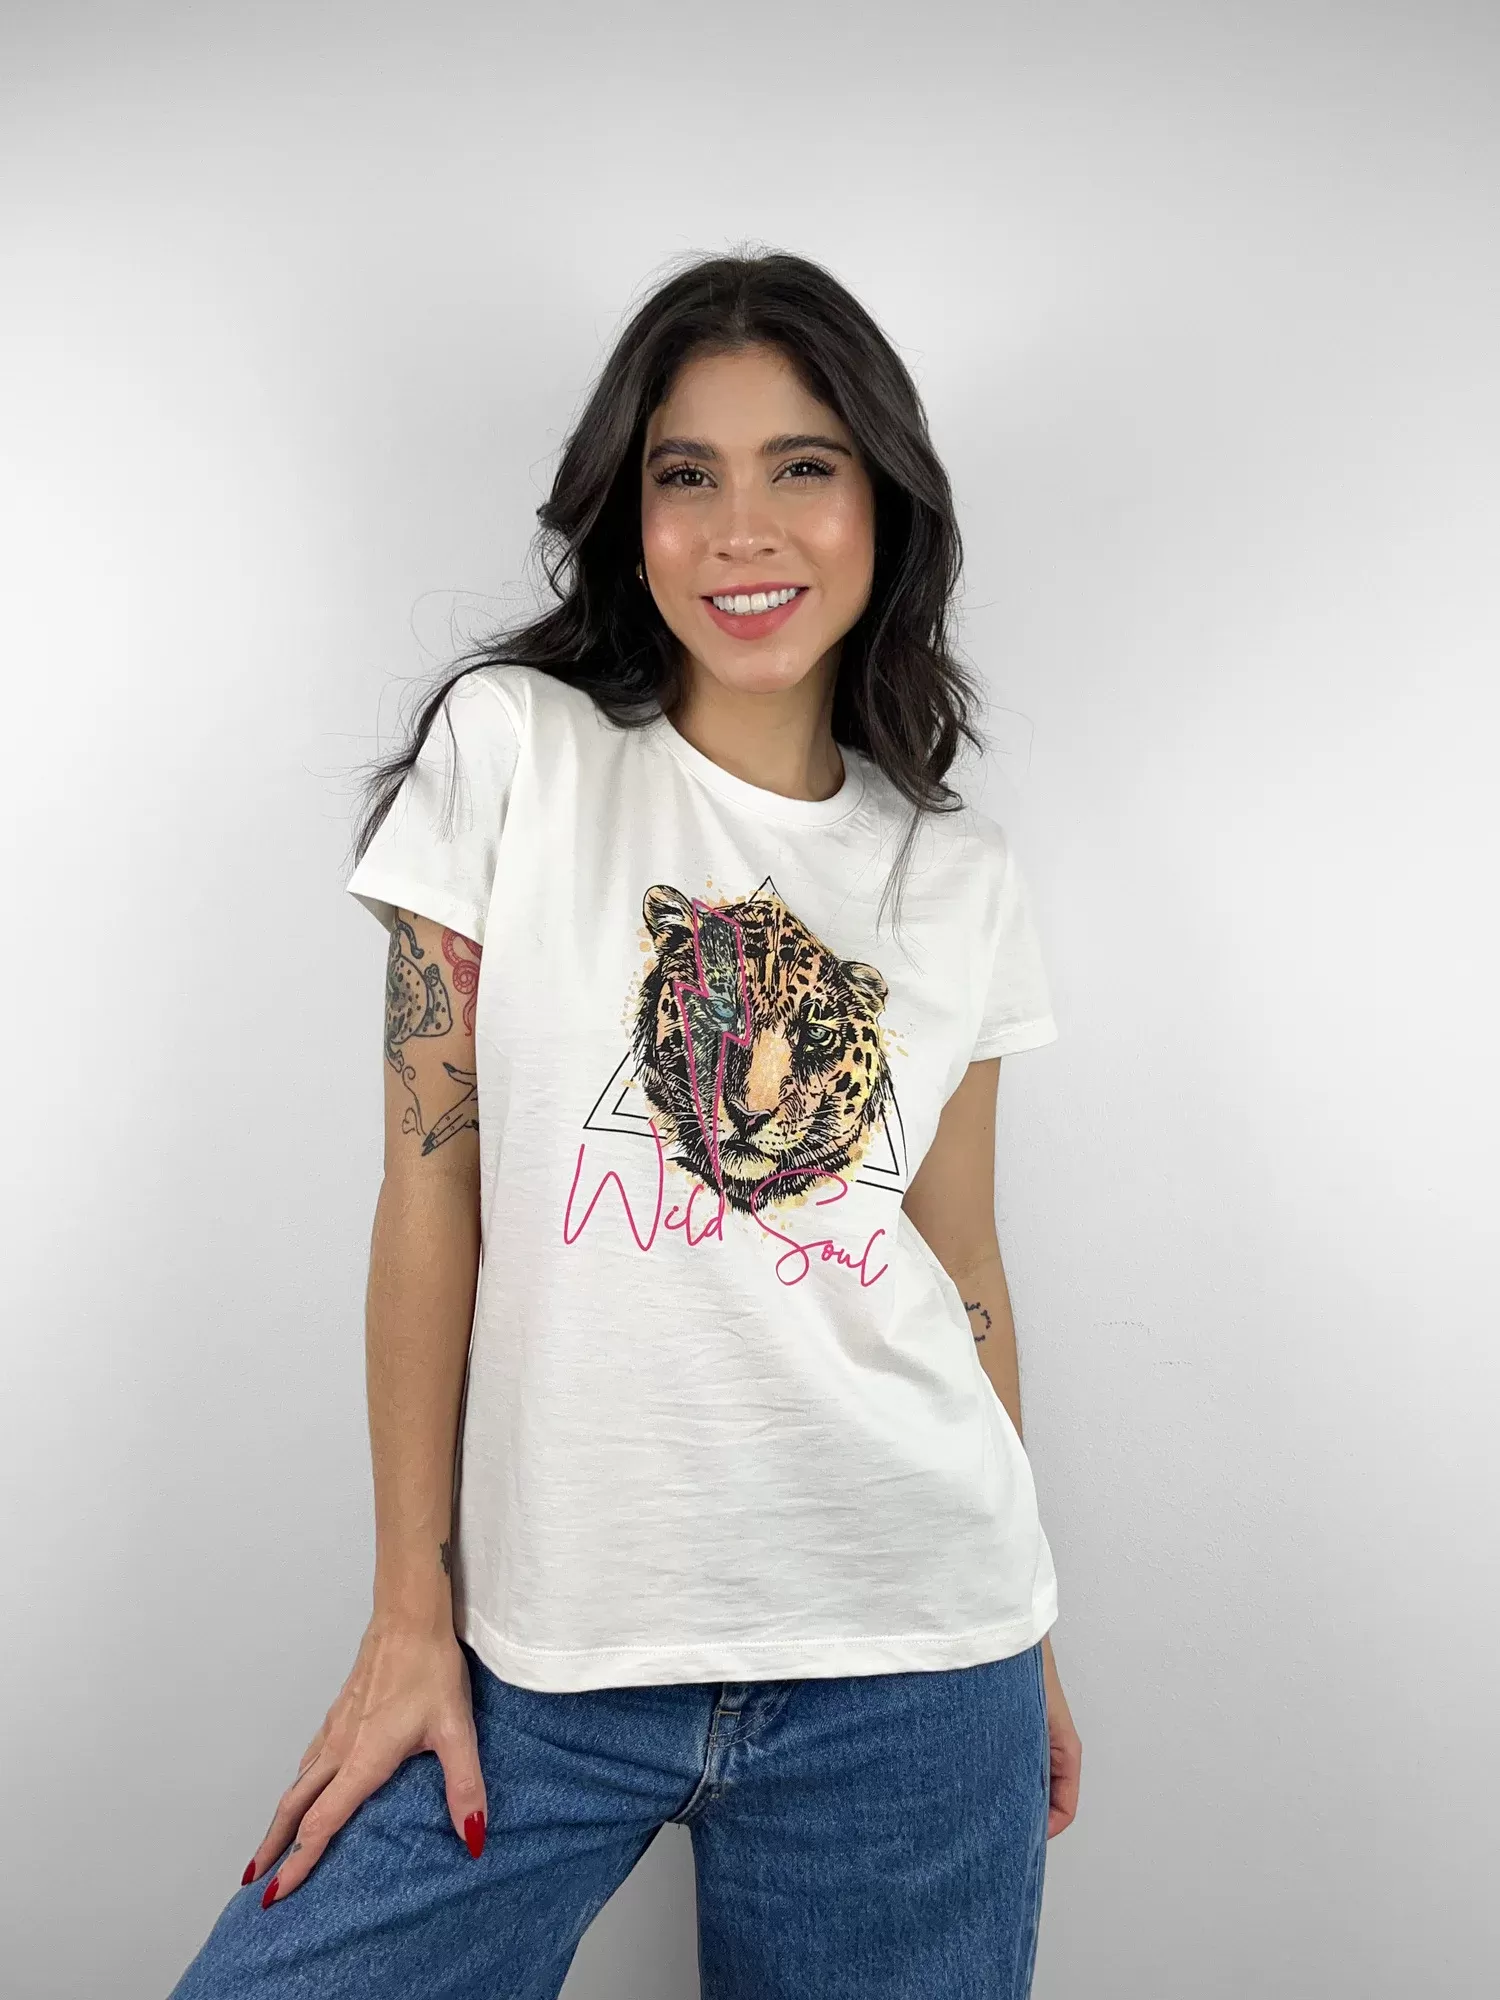 Camisetas femininas em cores e estampas super estilosas